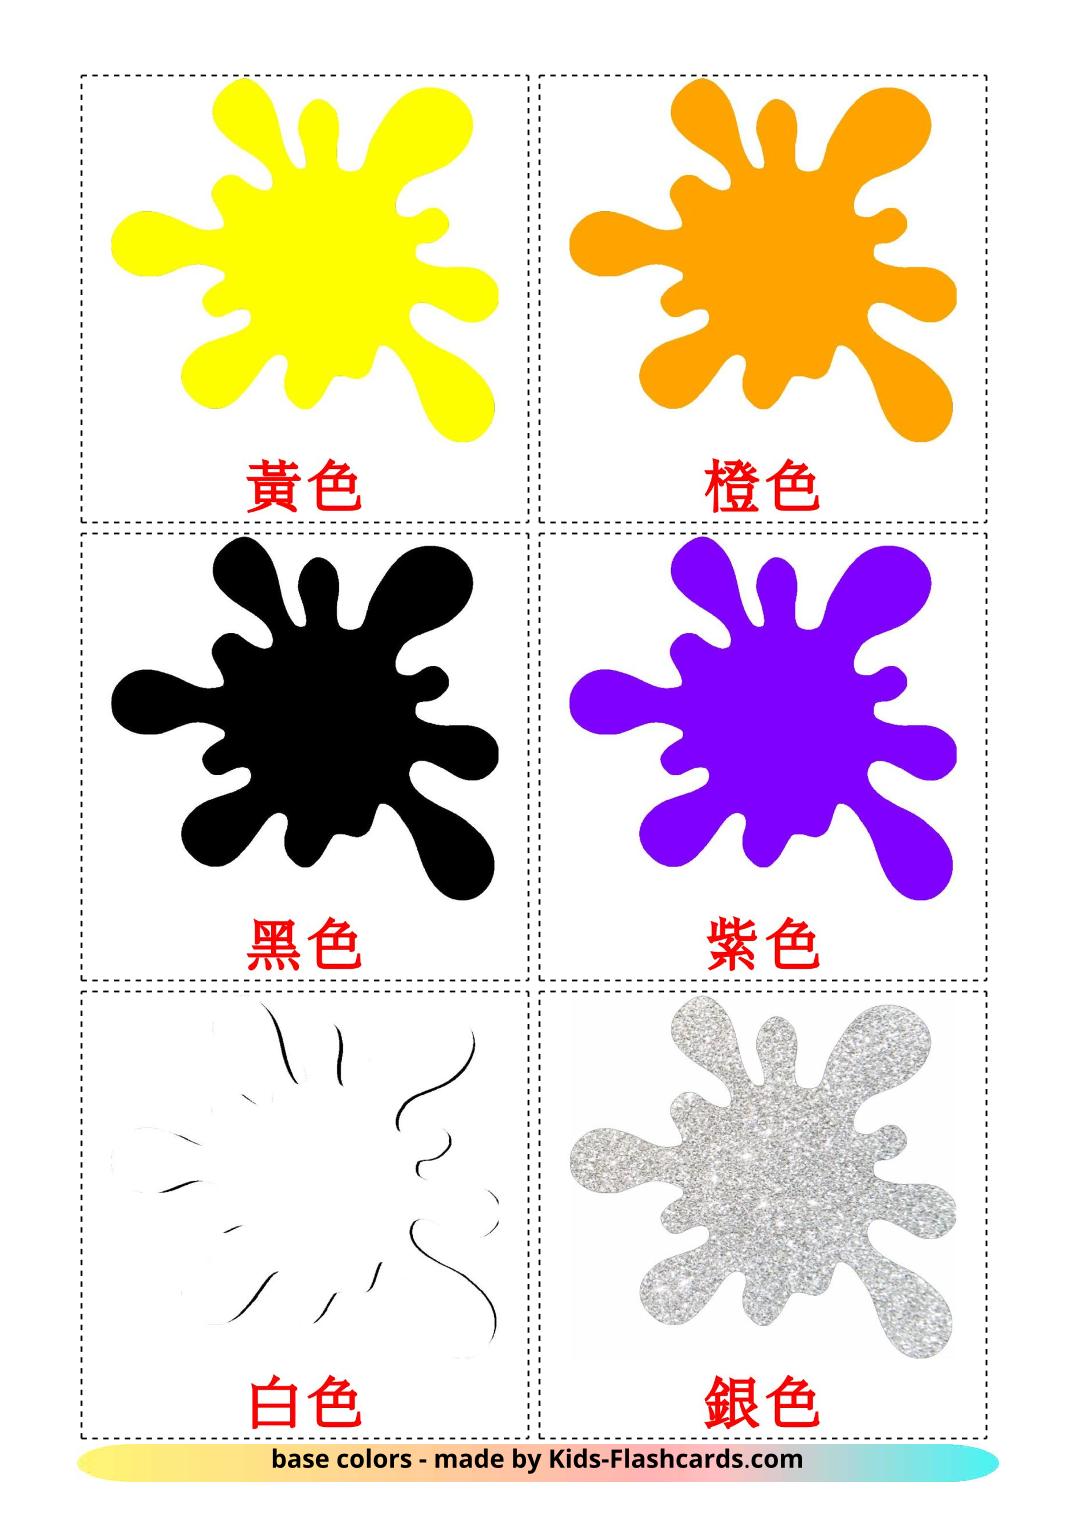 Couleurs de Base - 12 Flashcards chinois(traditionnel) imprimables gratuitement